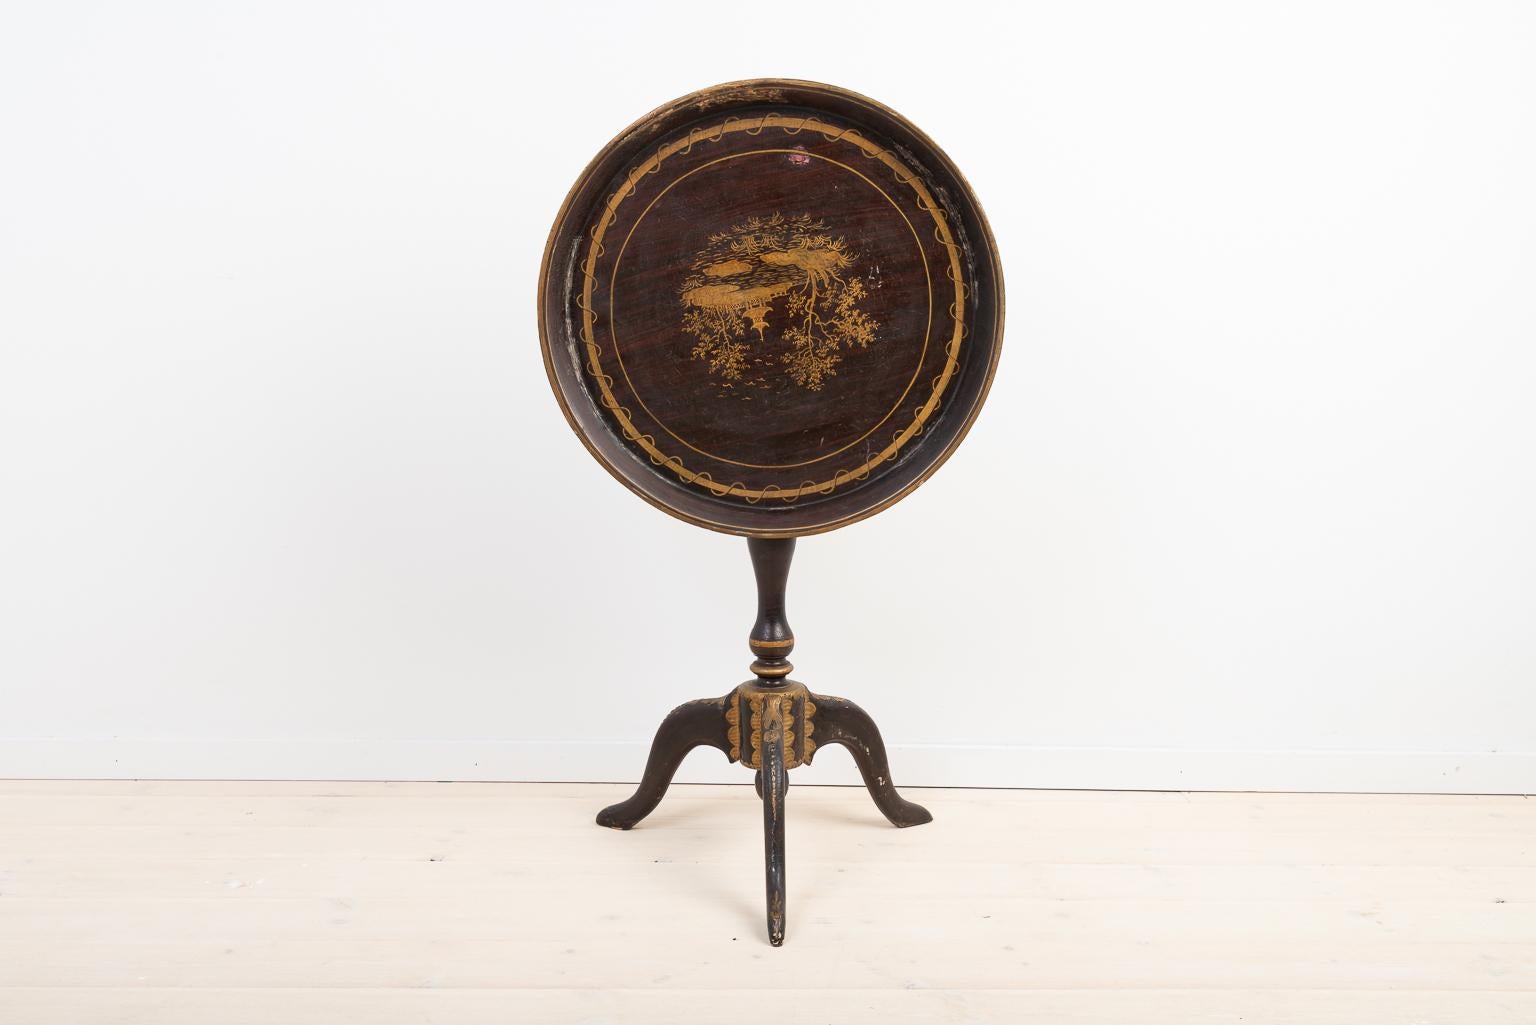 Schwedischer Tabletttisch des späten 18. Jahrhunderts. Der Tisch ist mit Holzschnitzereien verziert. Ein witziges Detail ist, dass das Bild auf der Tischplatte auf dem Kopf steht, wenn es zusammengeklappt ist. Der Tisch ist leicht schief - siehe